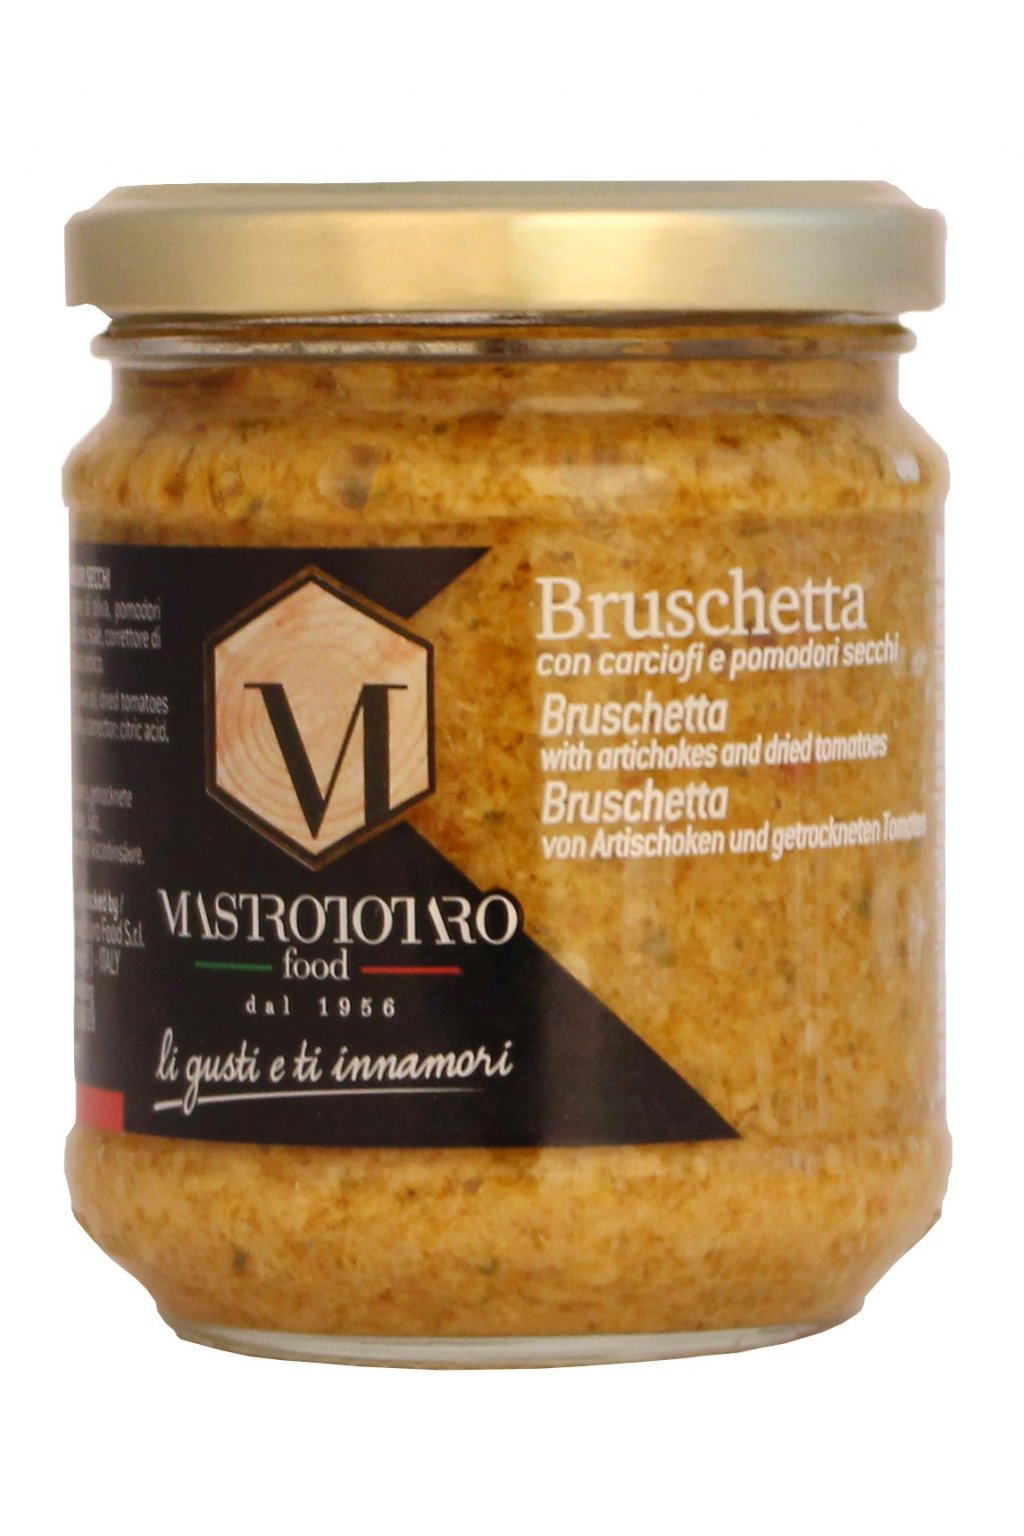 Směs na topinky z artyčoků (Bruschetta con Carciofi e Pomodori secchi) 180g